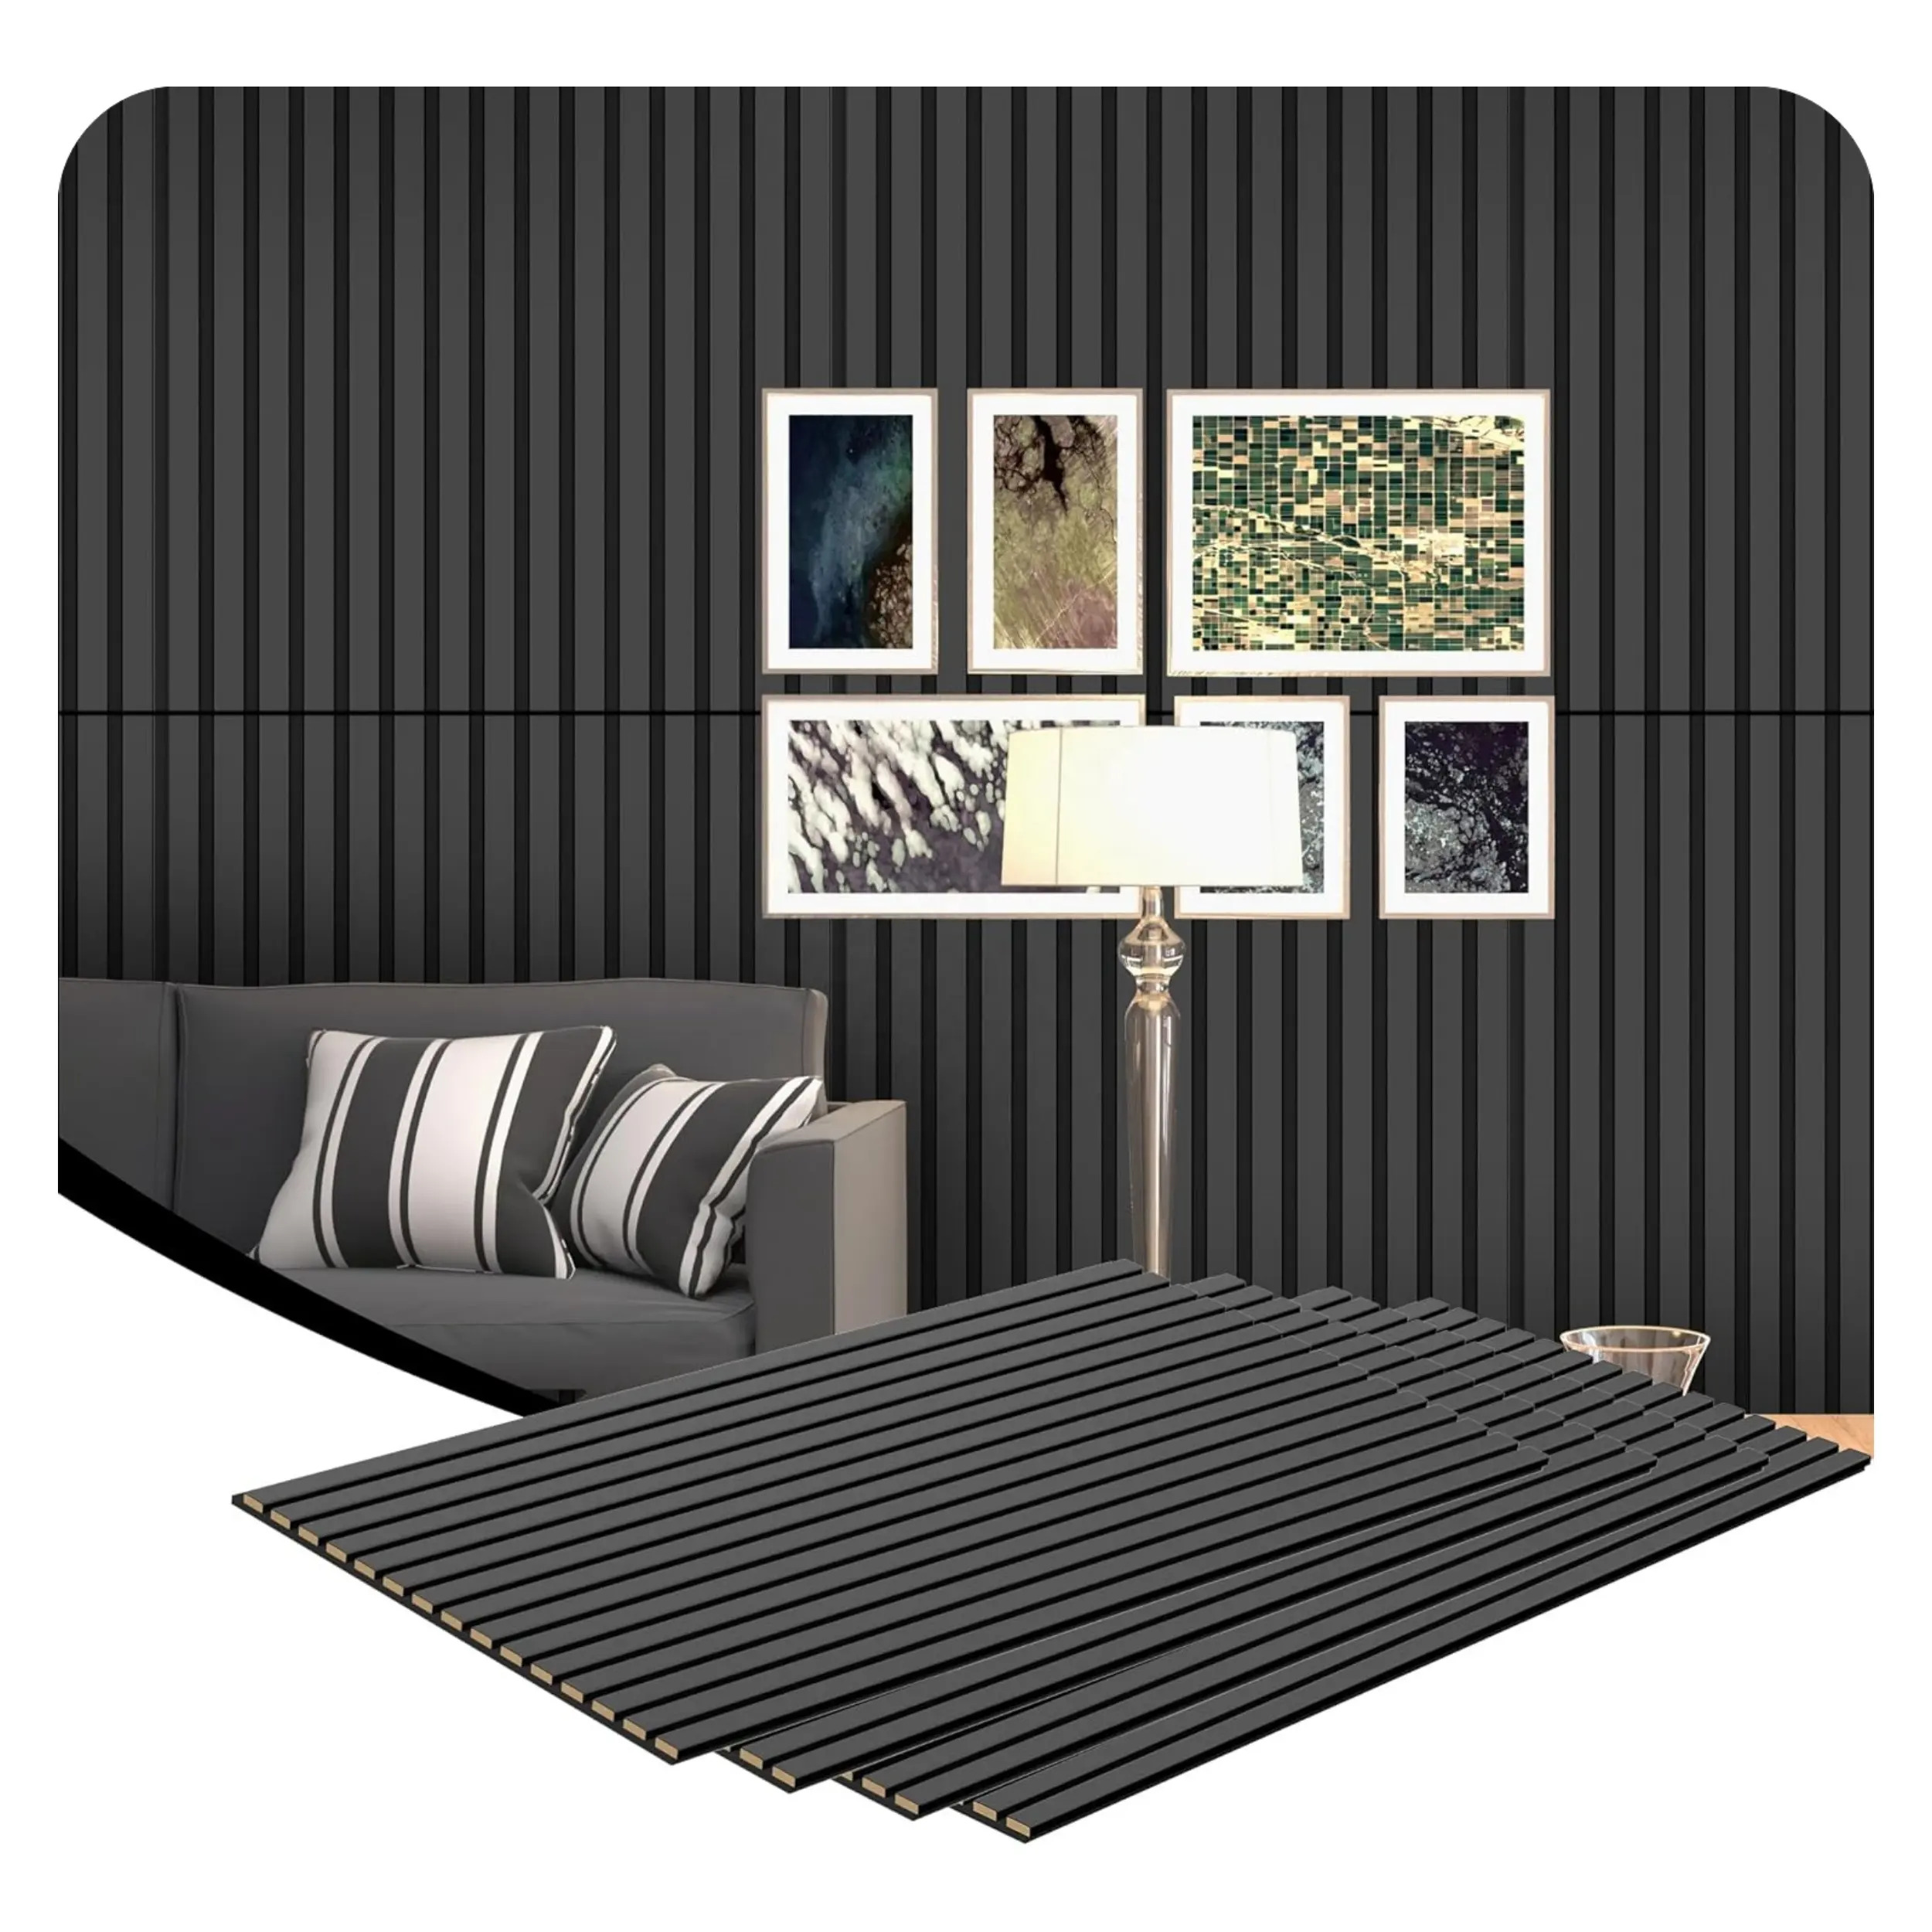 PET keçe 3 taraflı siyah PVC yüzey ahşap ızgara tabanı Akupanel akustik Panel ahşap akustik emme paneli ev sineması duvarları için